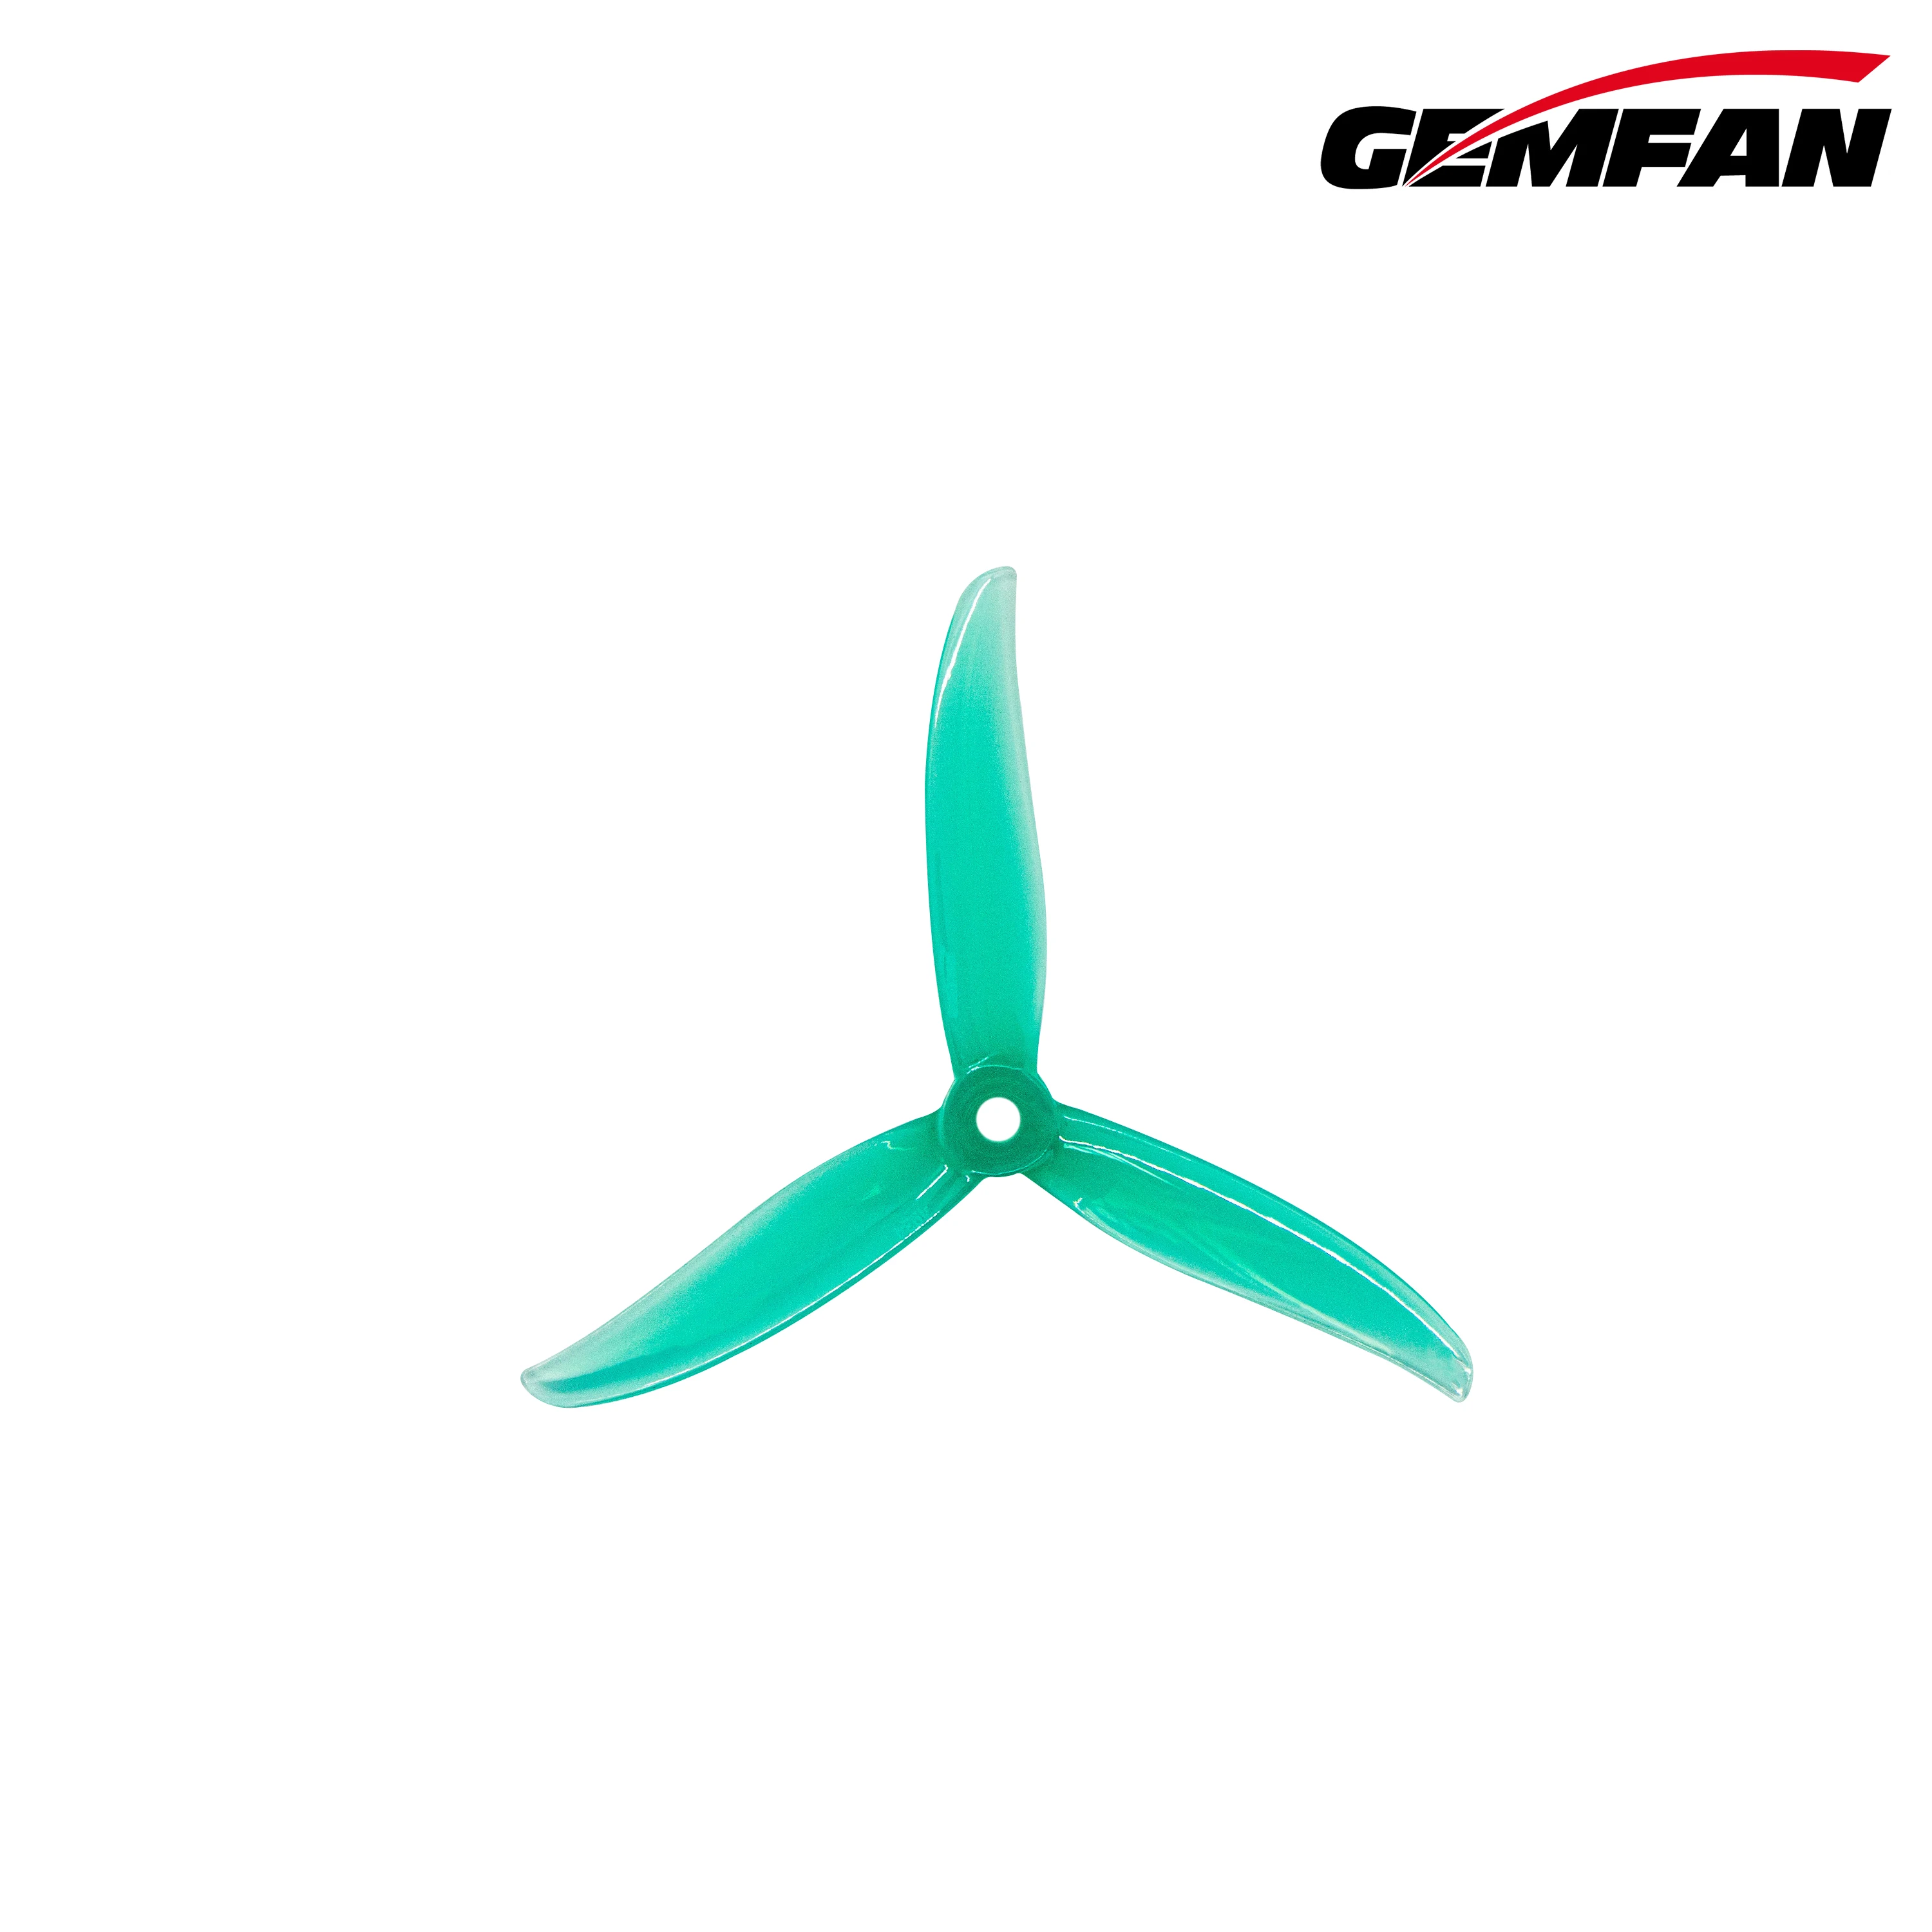 Gemfan SBANG 4934 4.9x3.4x3 3-Blade Green PC Propeller